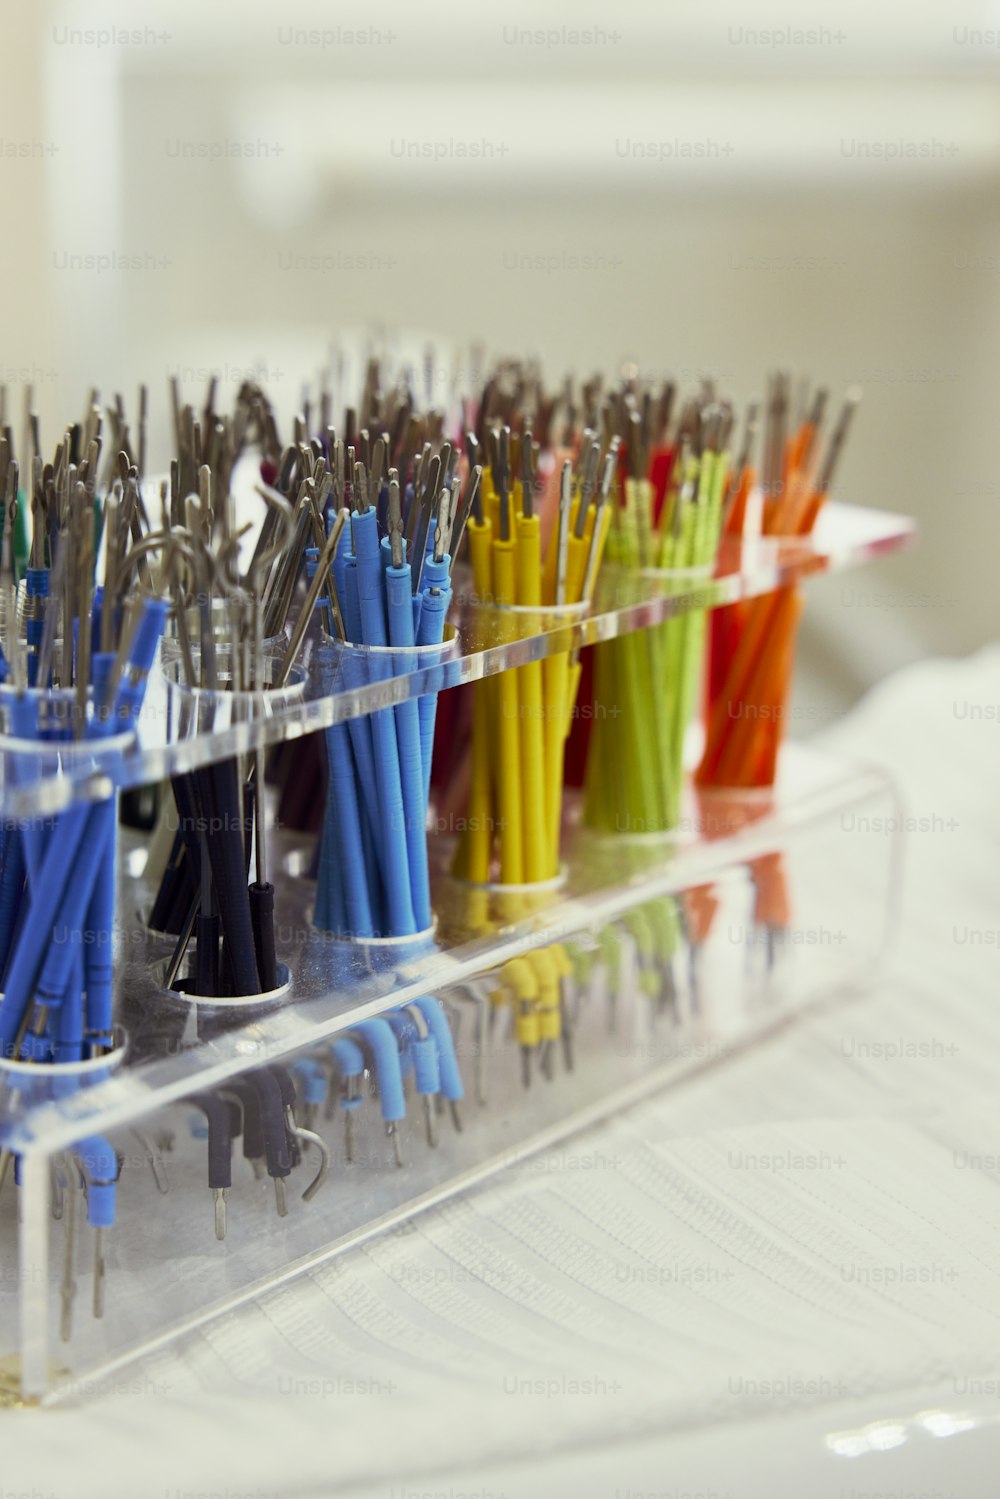 Un recipiente de plástico lleno de muchos bolígrafos de diferentes colores